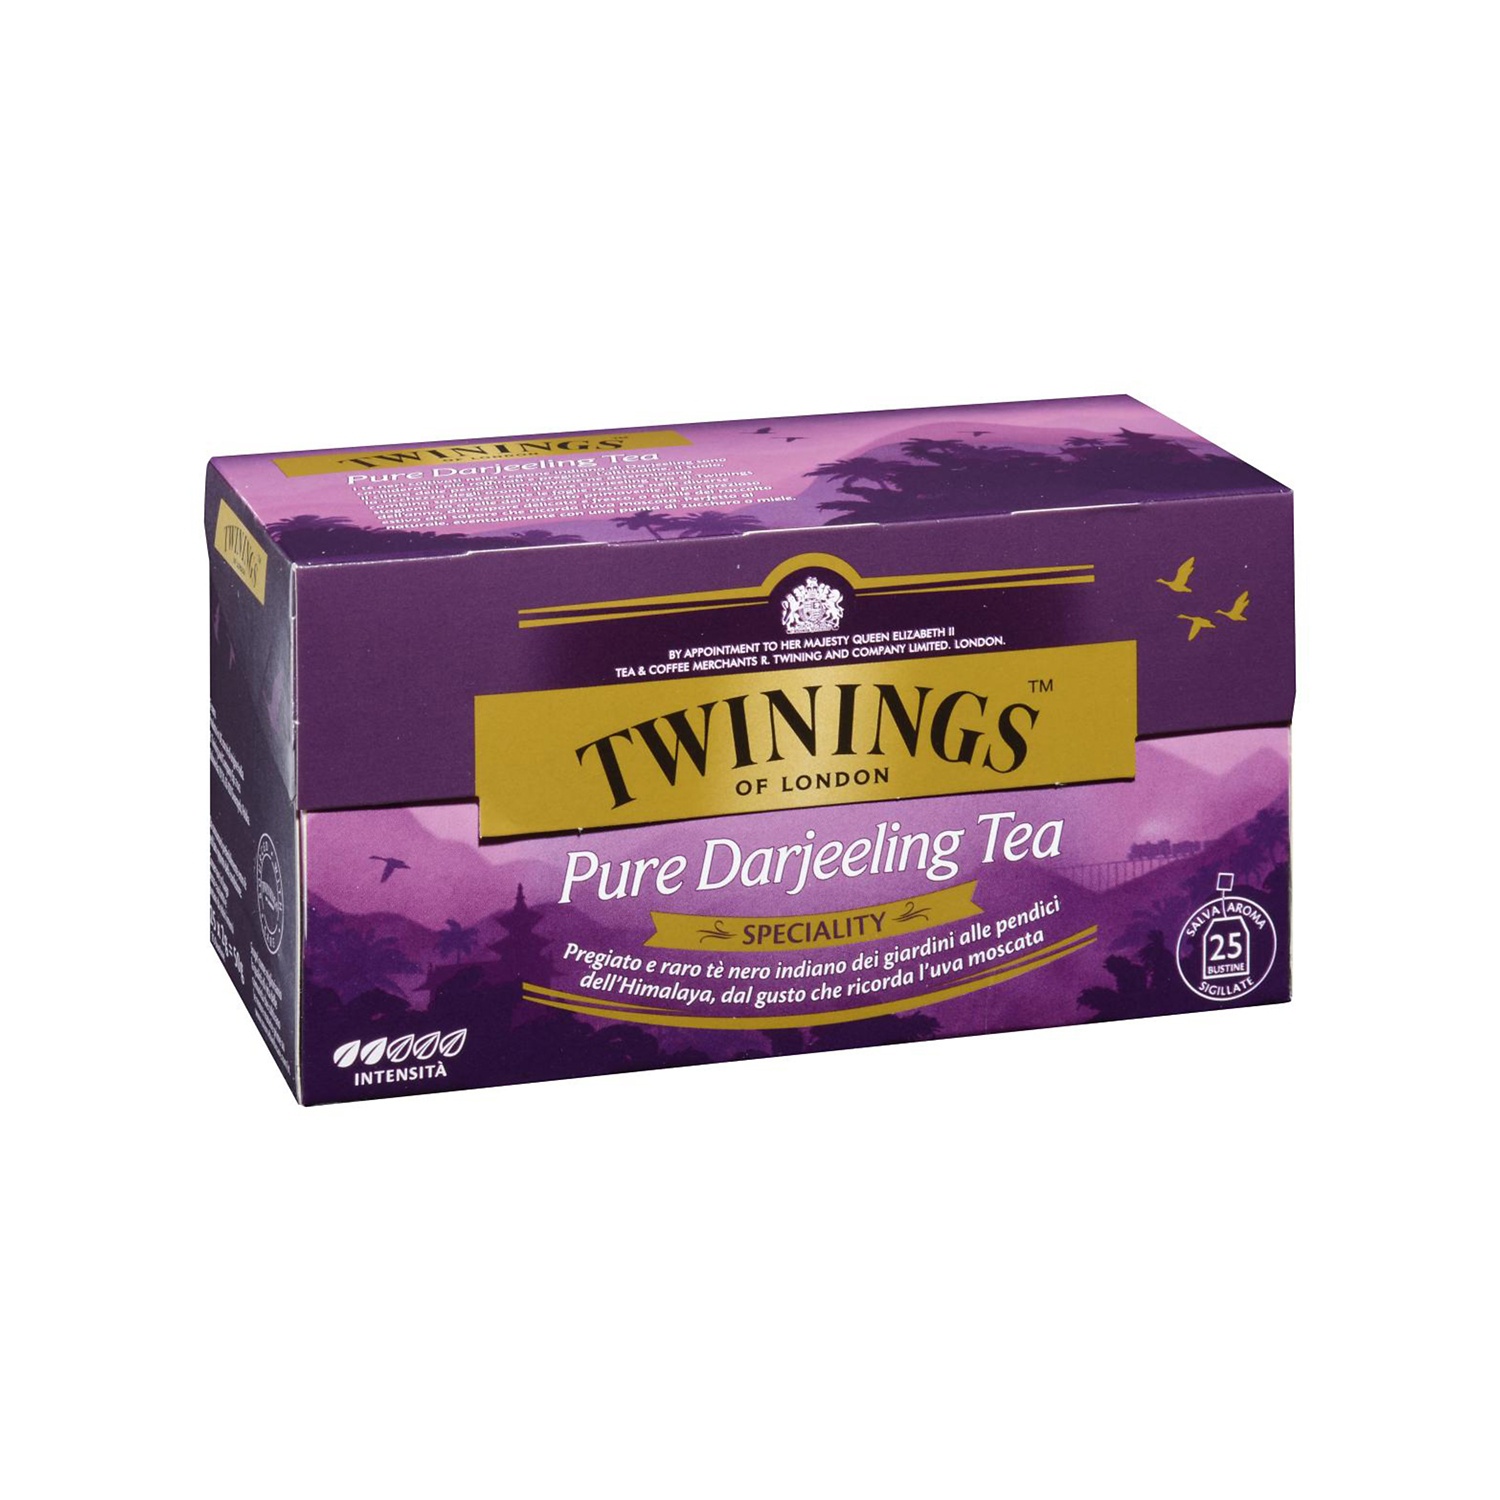 TWININGS Tè Pure Darjeeling